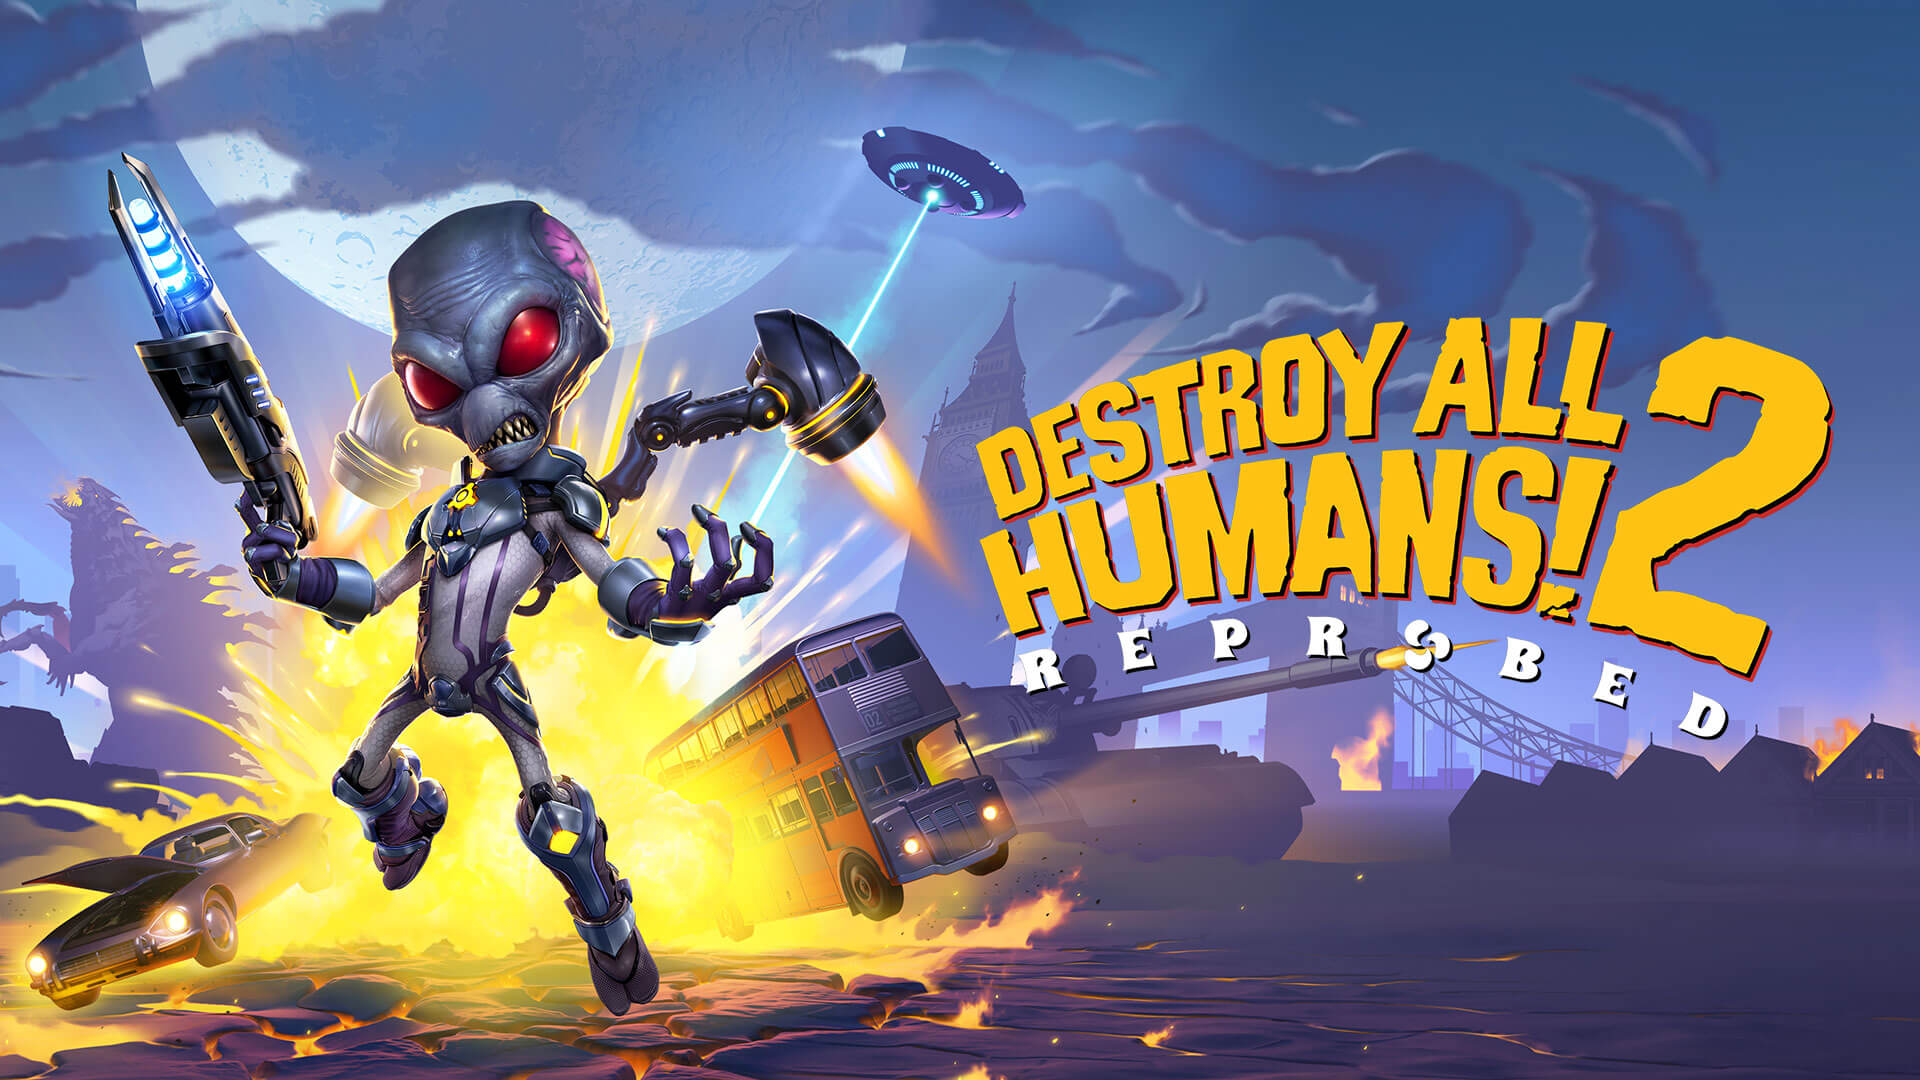 Zwiastun trybu współpracy w grze Destroy All Humans! 2: Reprobowany